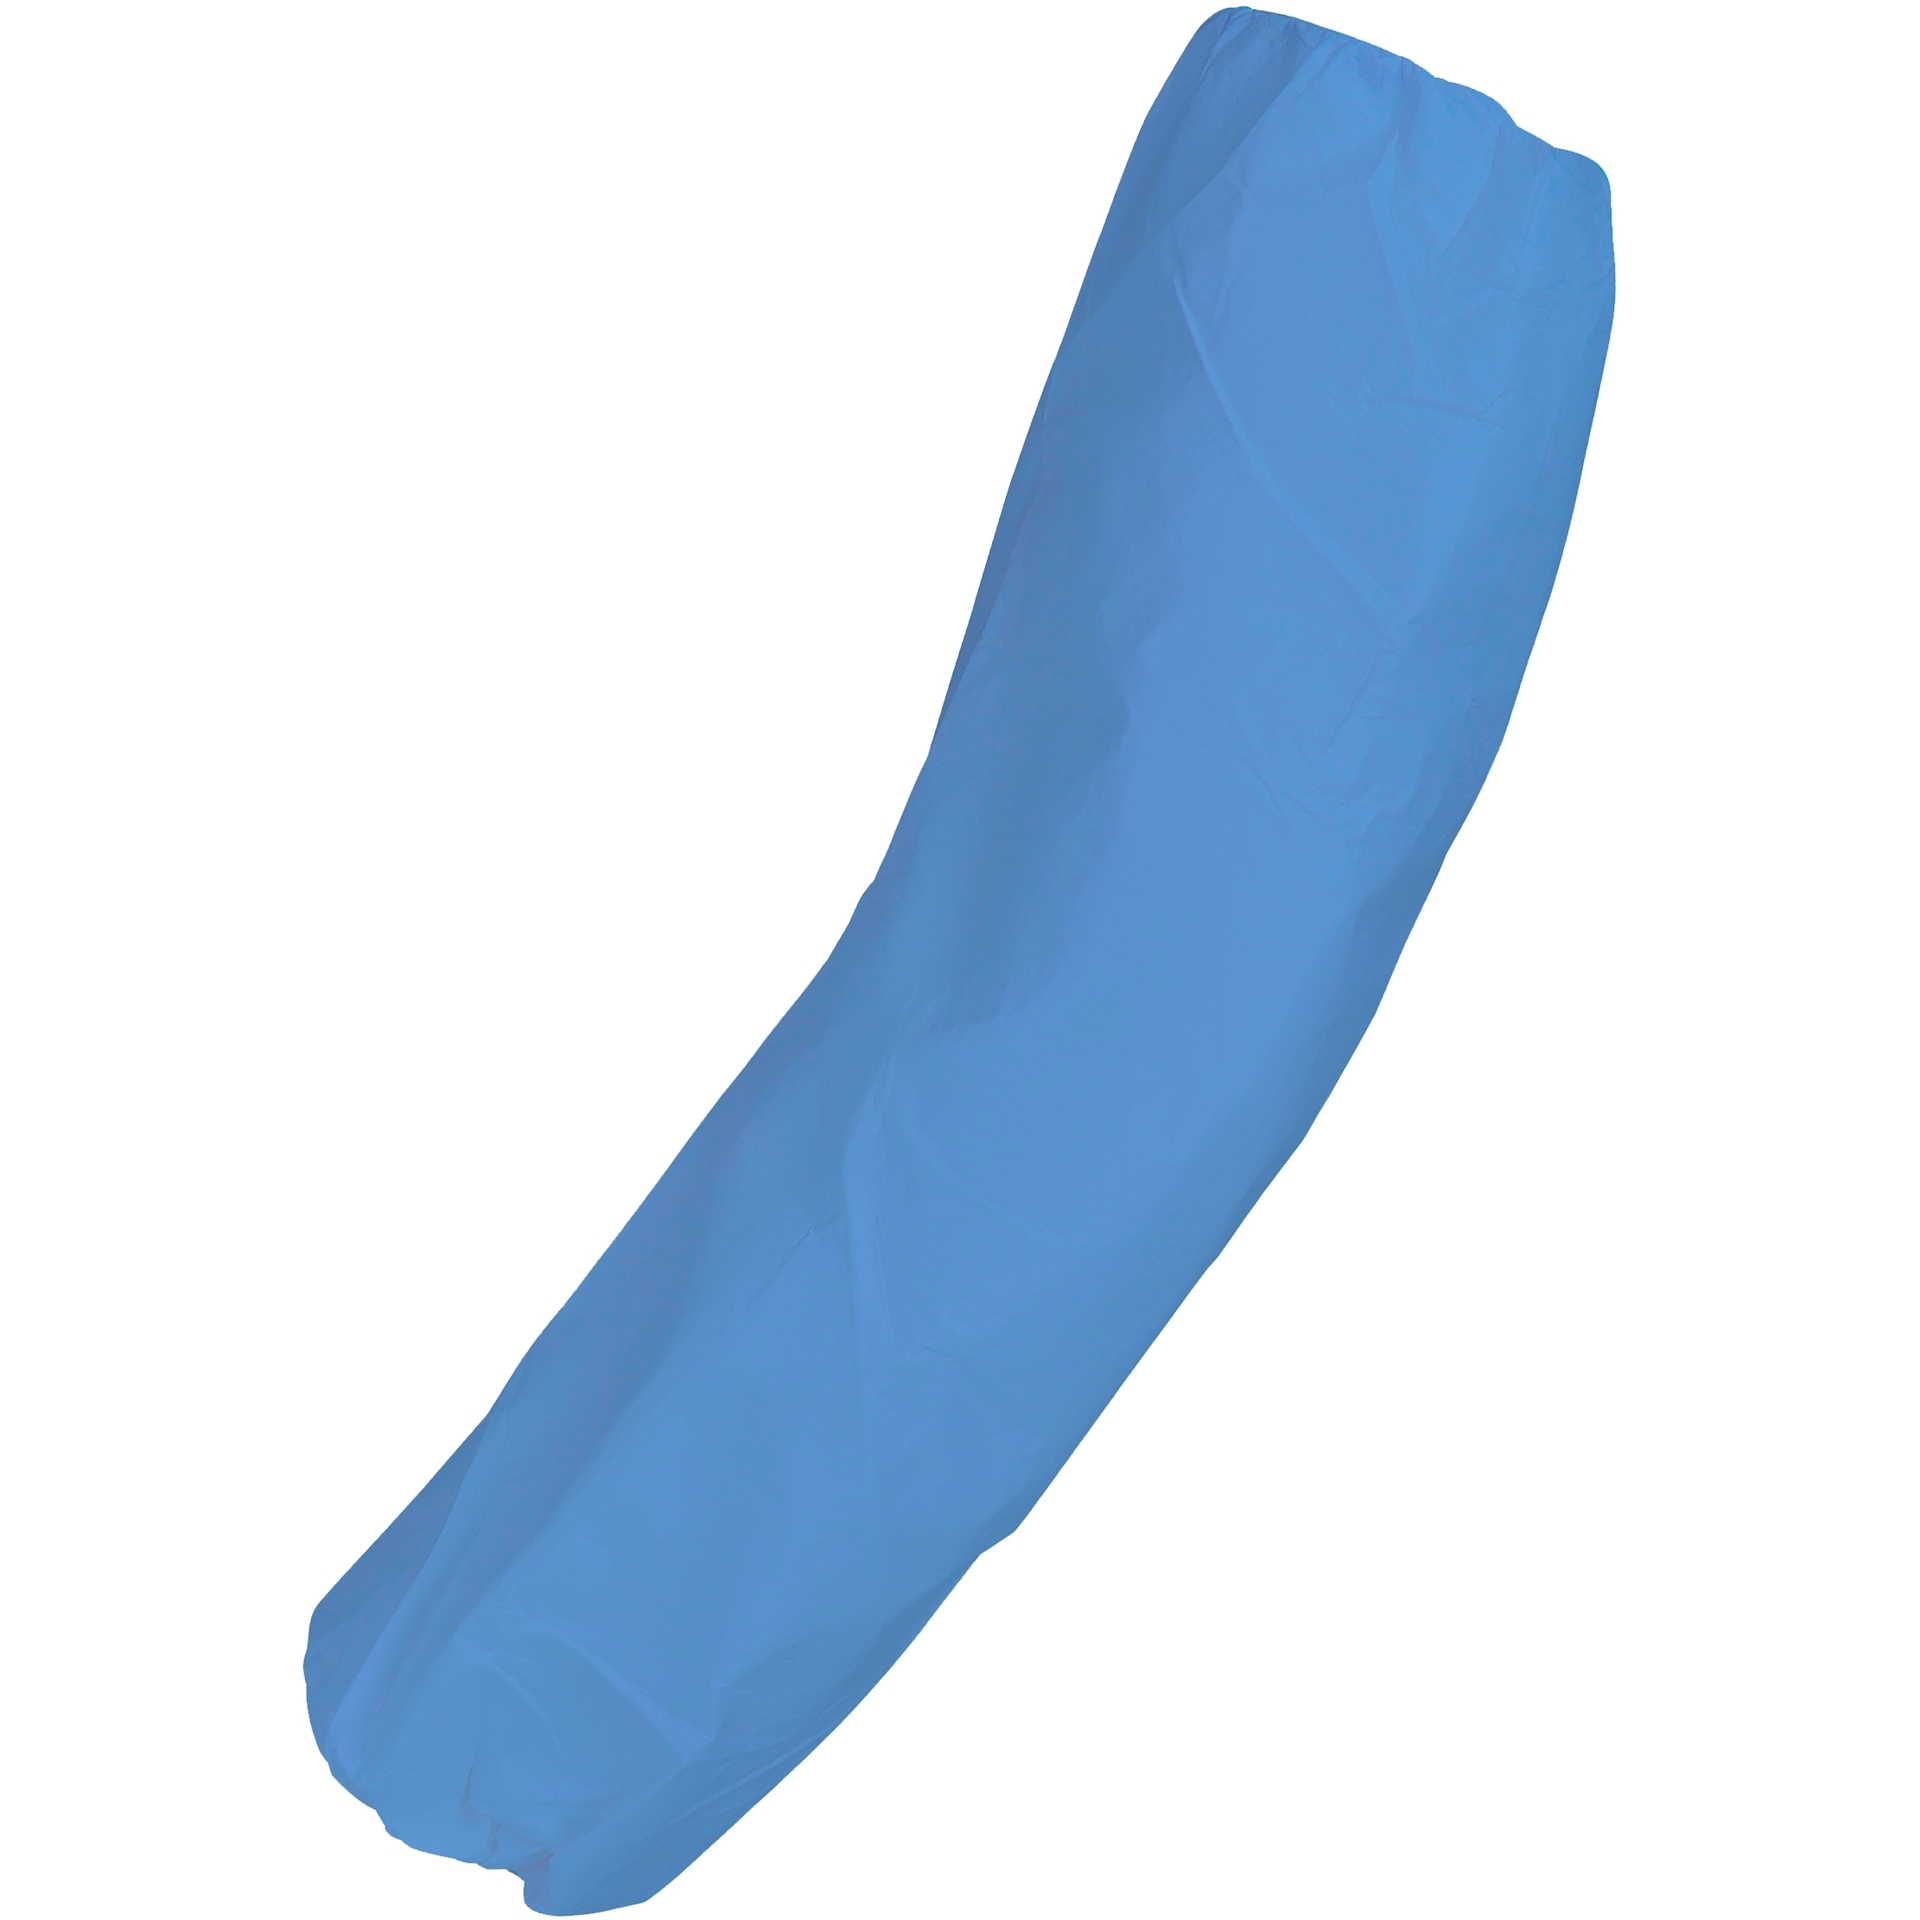 ASATEX-Hygiene, Einweg-Armstulpe PE-AS20B, blau, VE = 20 Pkg. á 100 Stk.